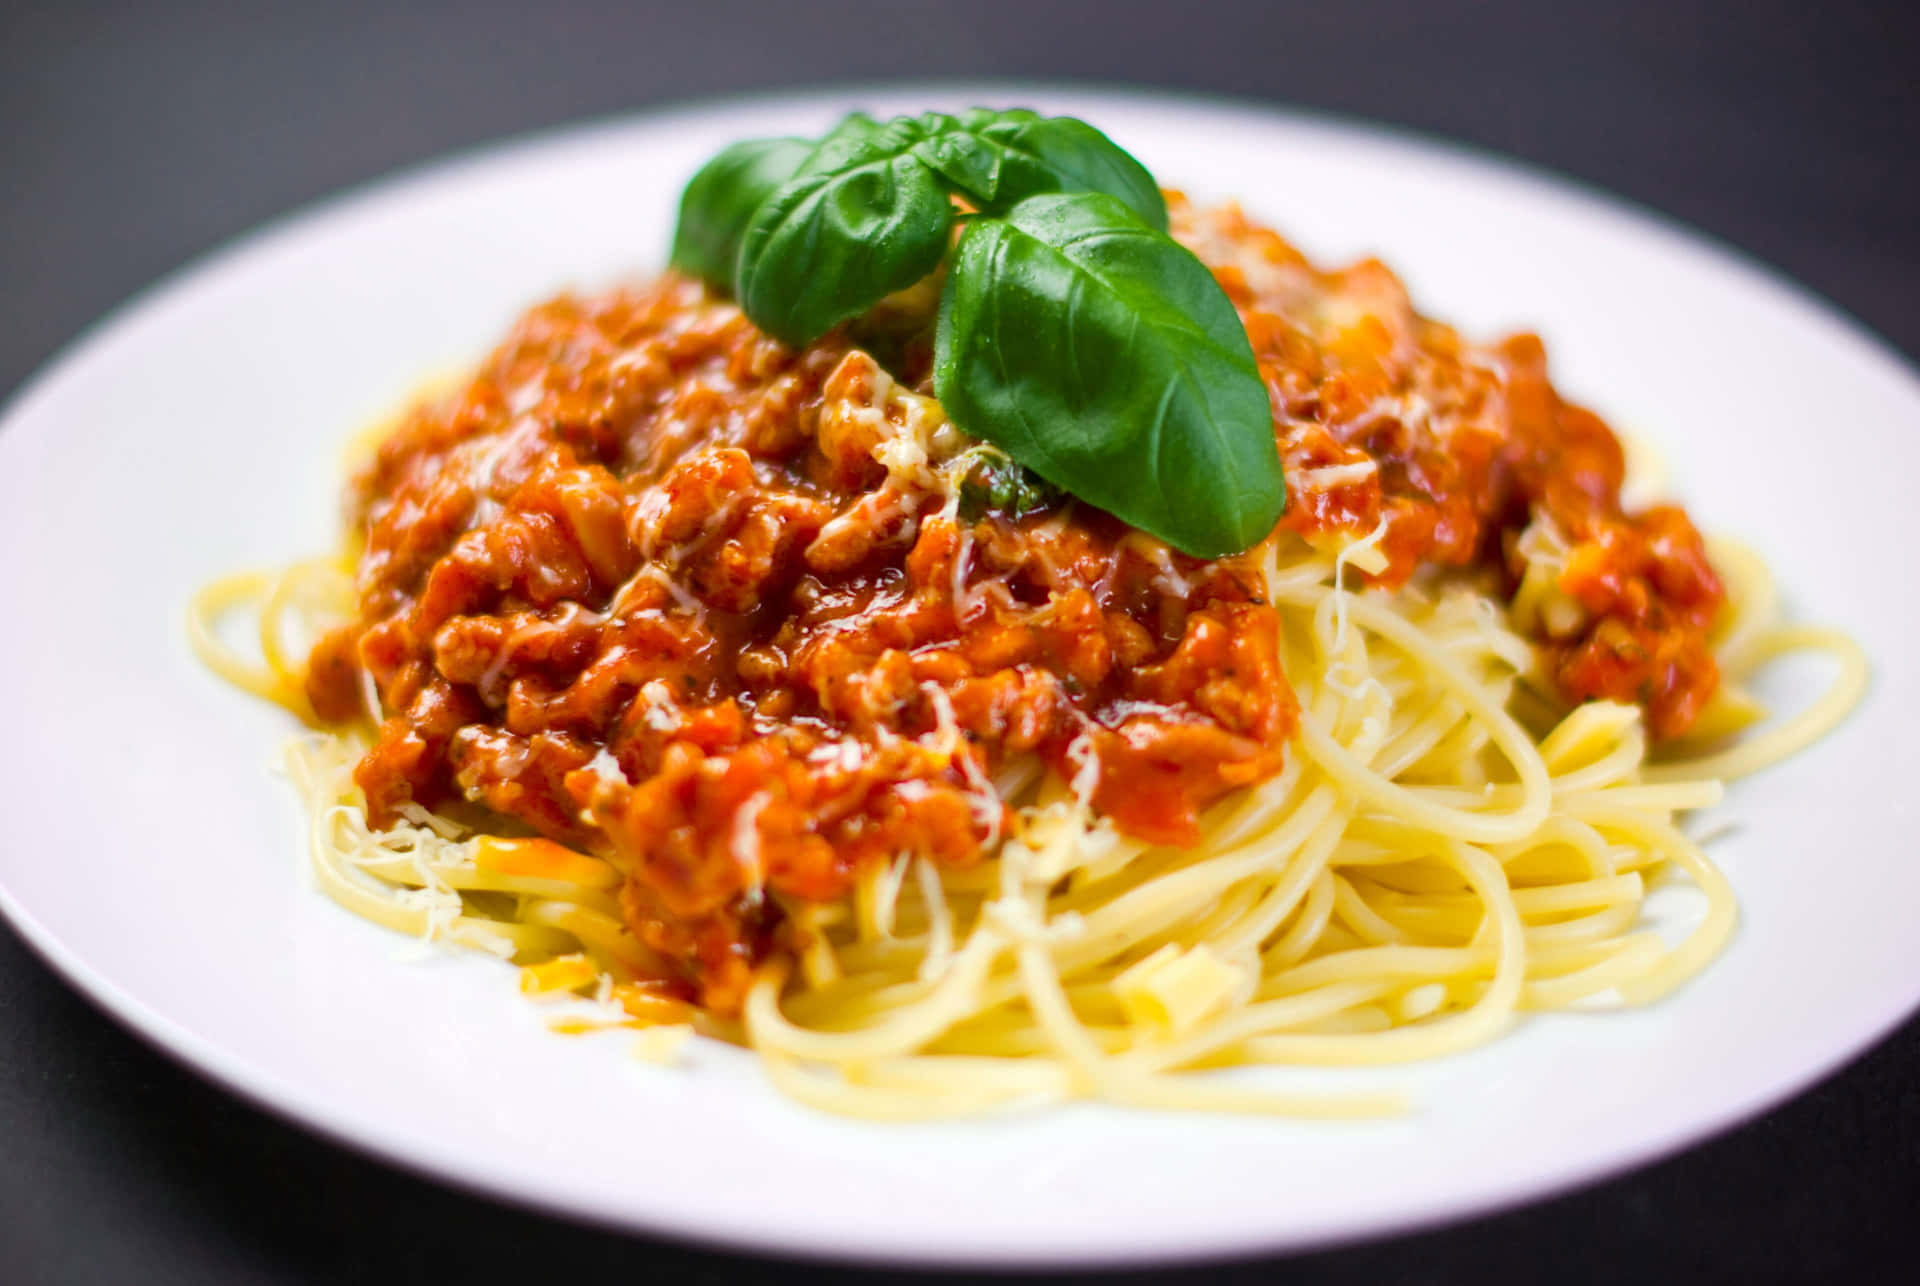 Nyd en smagfuld skål af dejlig hjemmelavet spaghetti Wallpaper